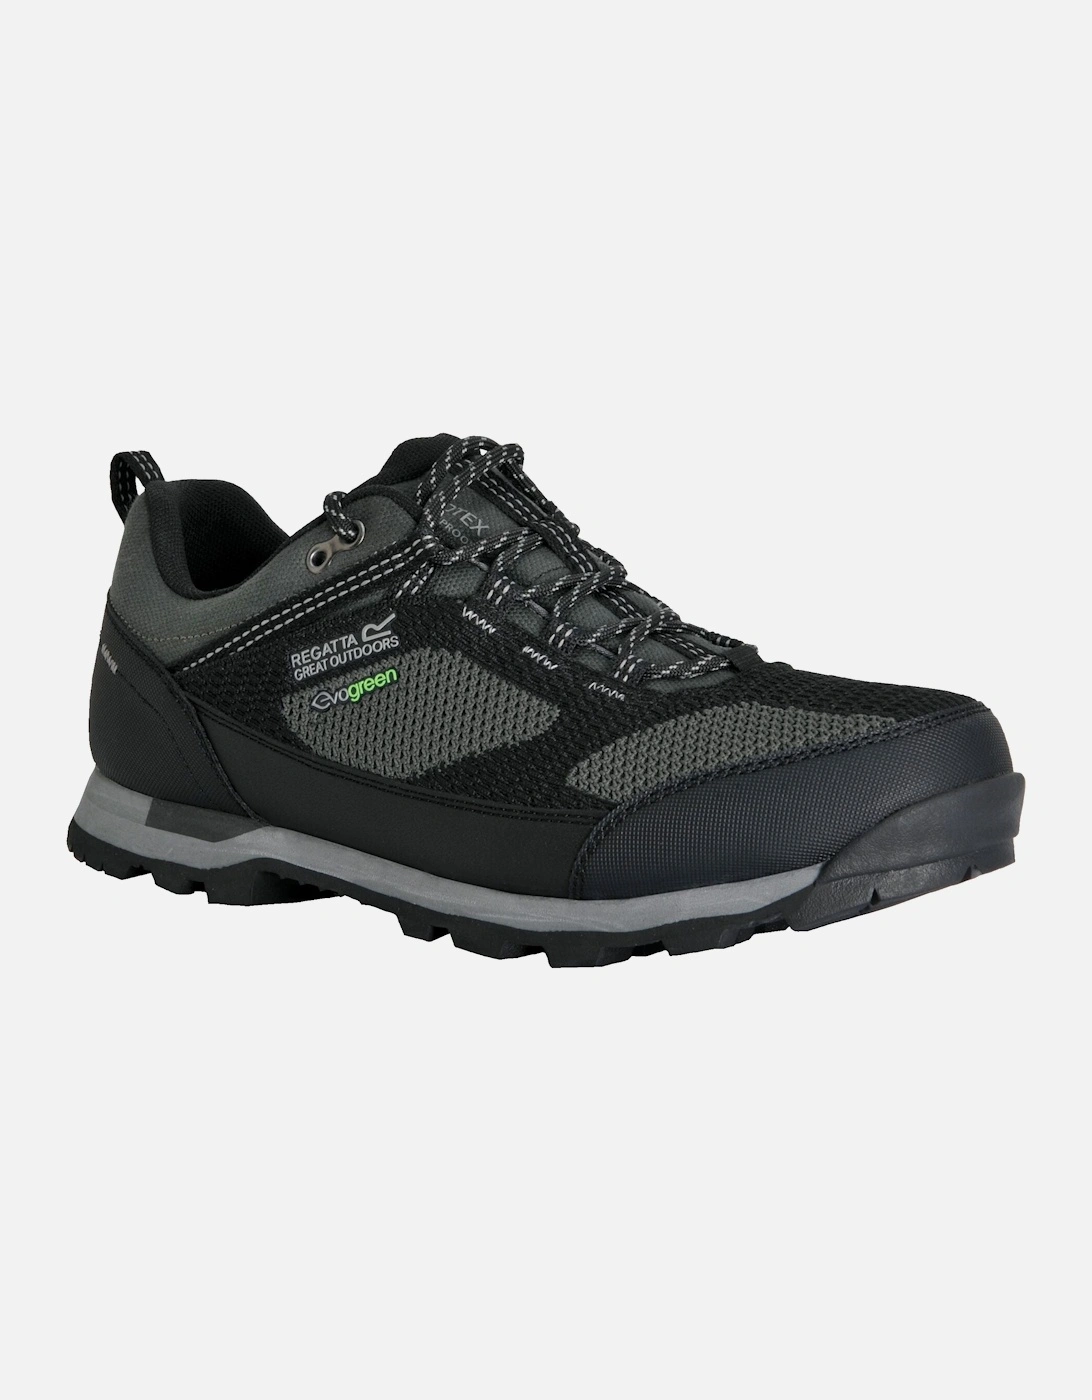 Mens Blackthorn Evo Low Waterproof Walking Shoes, 7 of 6